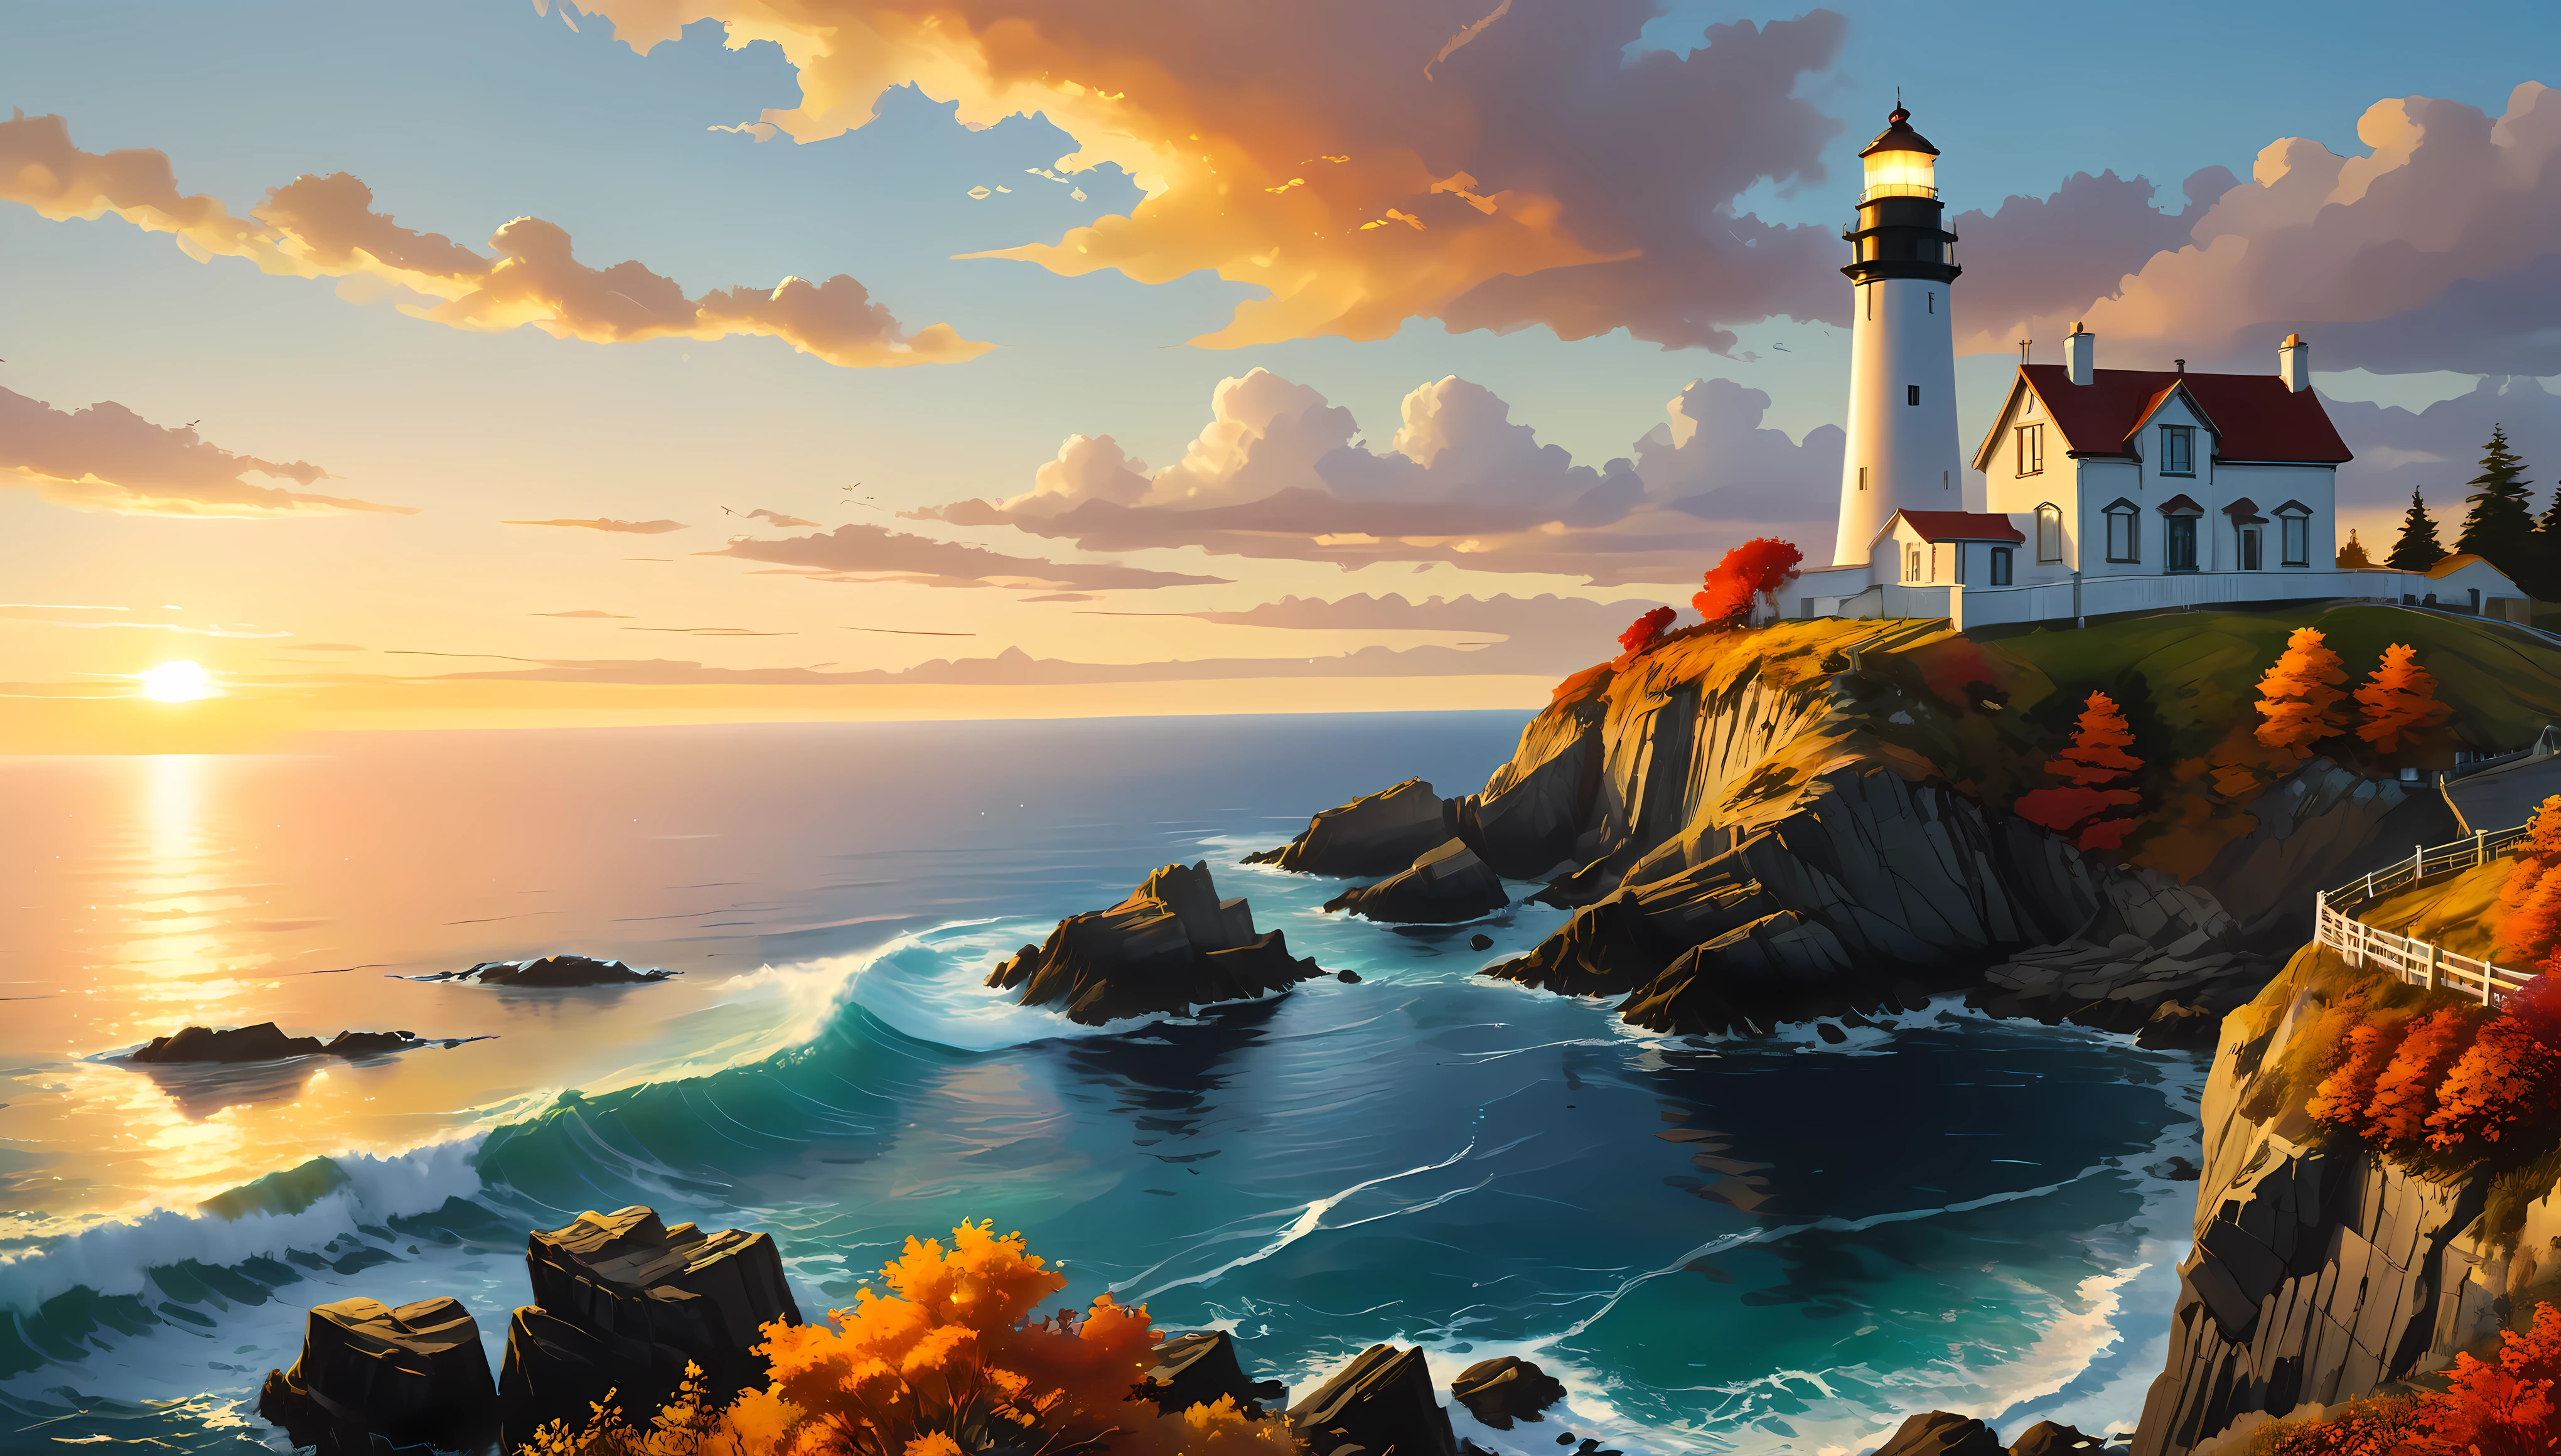 Une falaise surplombe un phare avec vue sur le vaste océan, Phare fascinant baigné par la lumière du coucher du soleil,((heure d&#39;or):1.2),((Paysage majestueux):1.2),((Ciel coucher de soleil à l&#39;automne):1.1),délicate lumière dorée de l&#39;heure, fonds d&#39;écran incroyables, un cadre magnifique, peinture mate optimiste, Belle œuvre d&#39;art numérique, Scènes belles et détaillées, UHD sous terre, Paysage UHD, Art conceptuel majestueux, beau phare. |(Chef-d&#39;œuvre en résolution maximale de 16K), La meilleure qualité, (qualité de fond d&#39;écran CG Unity 16k très détaillée),(Couleurs douces Art numérique 16k très détaillé),Super détaillé. | image parfaite,16k UE5,peinture officielle, superfin, profondeur de champ, pas de contraste, Mise au point nette et nette, Professionnel, Pas de flou. | (((Plus de détails))).